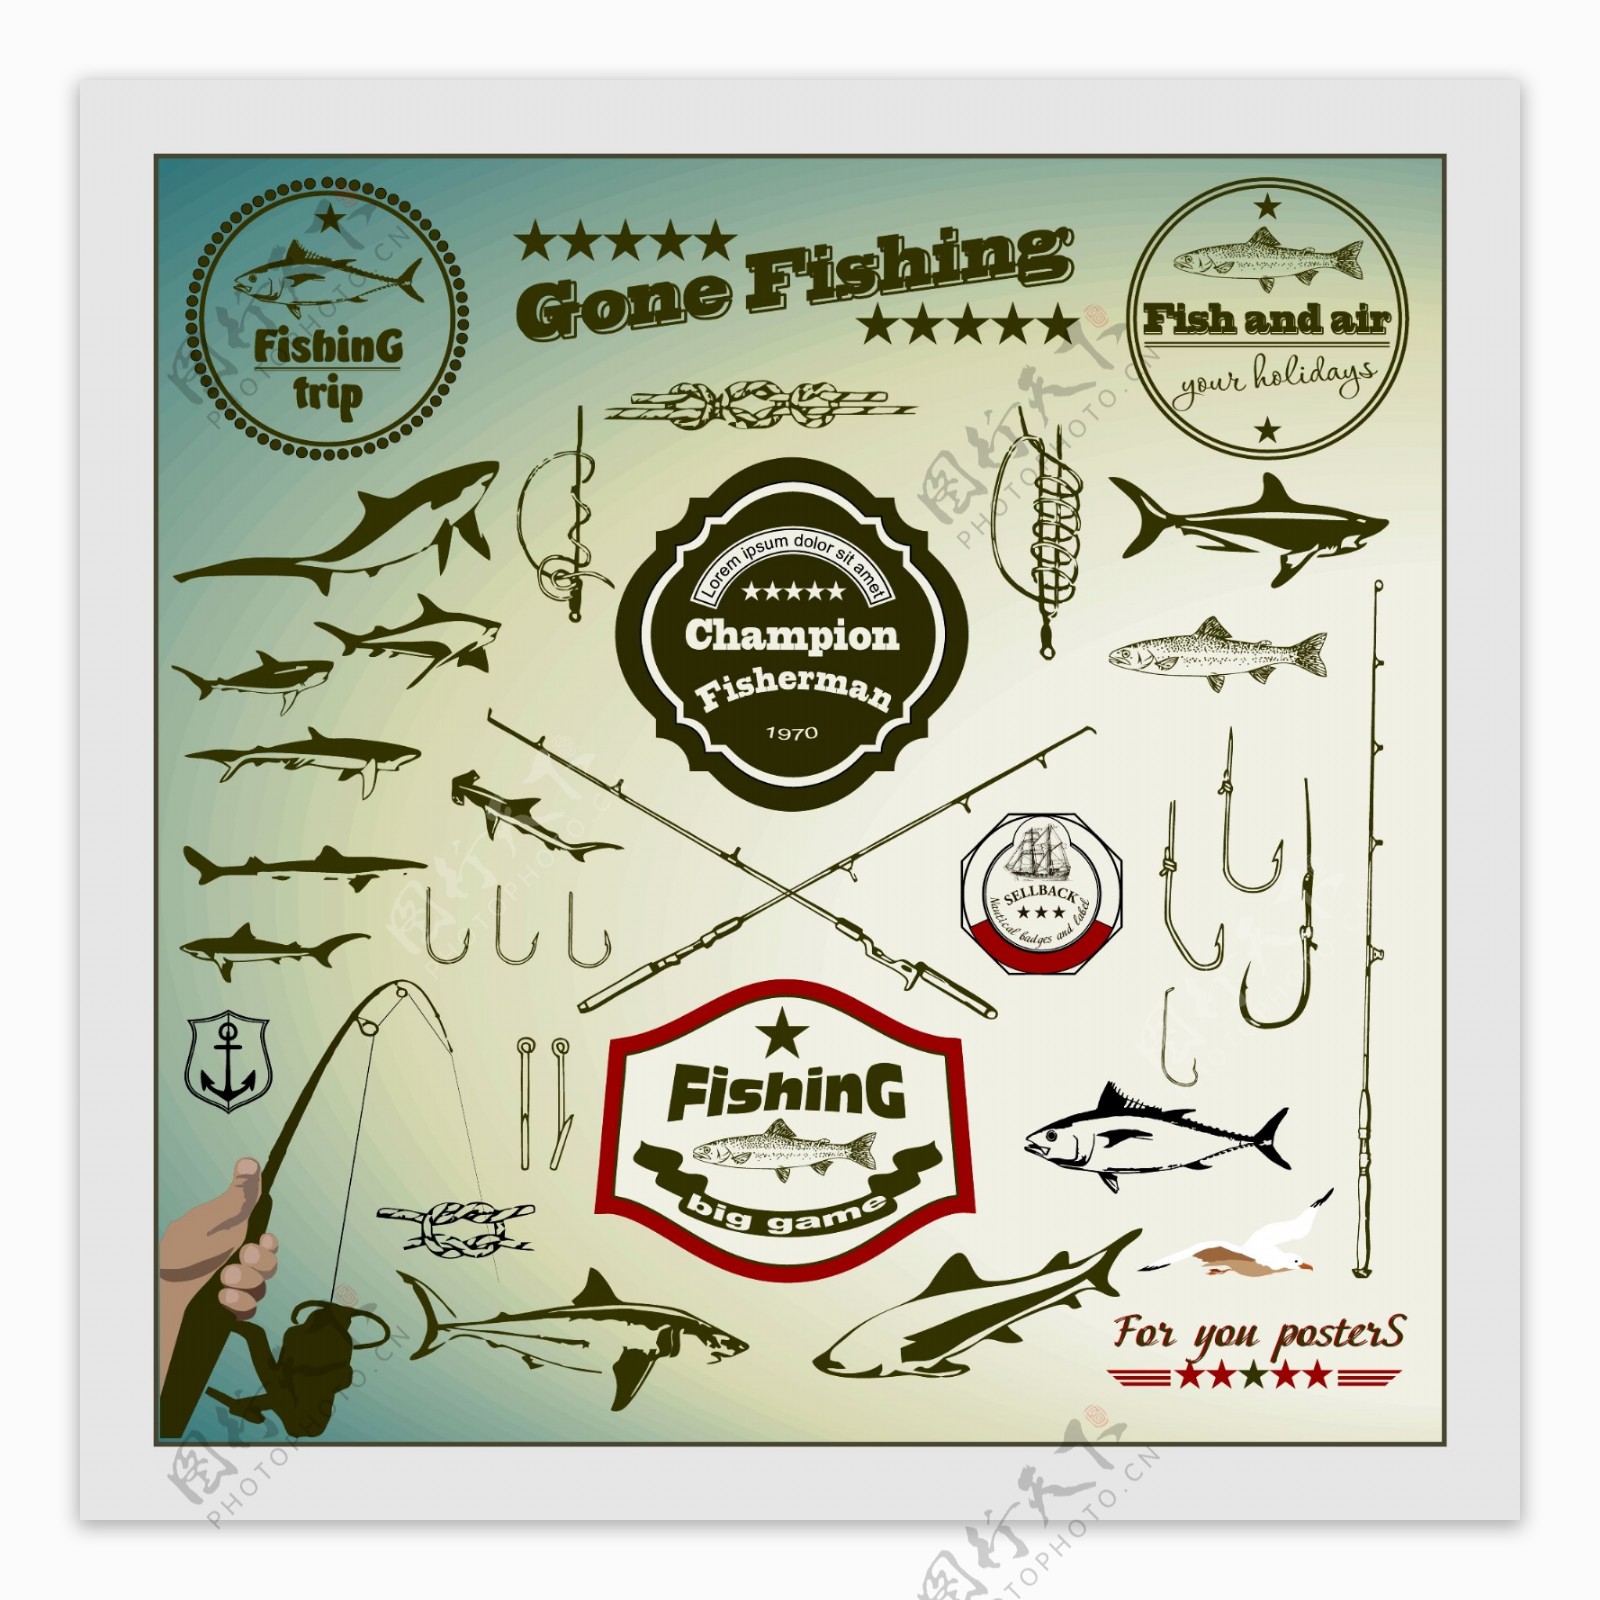 钓鱼设计钓鱼图标图片